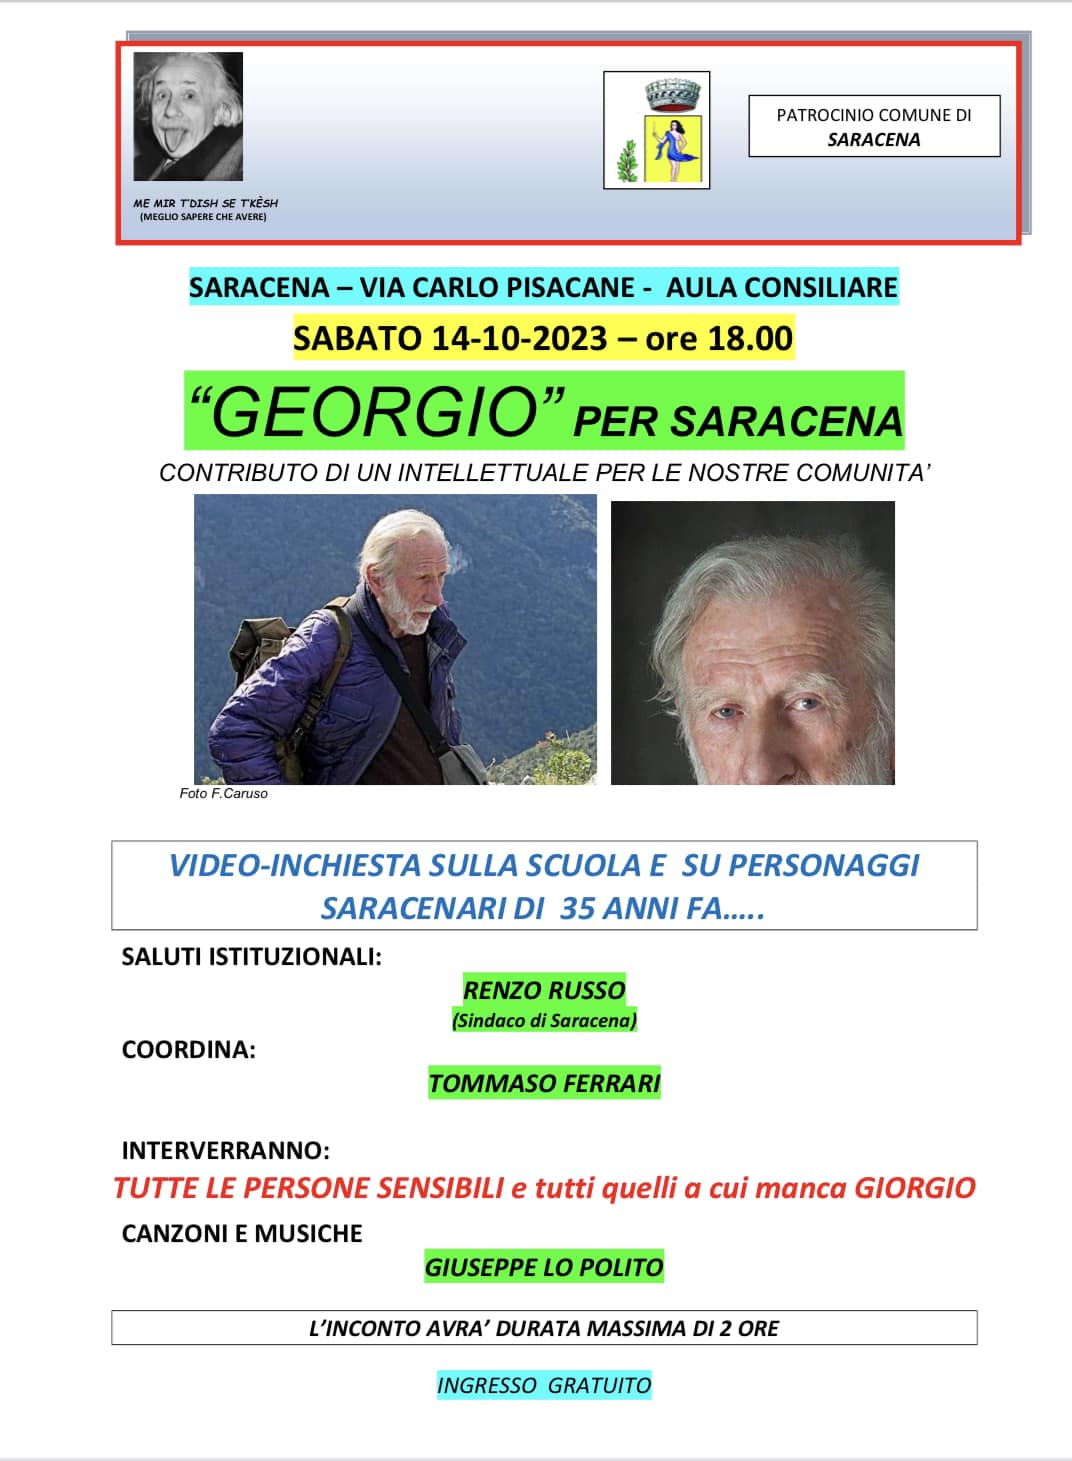 Georgio per Saracena